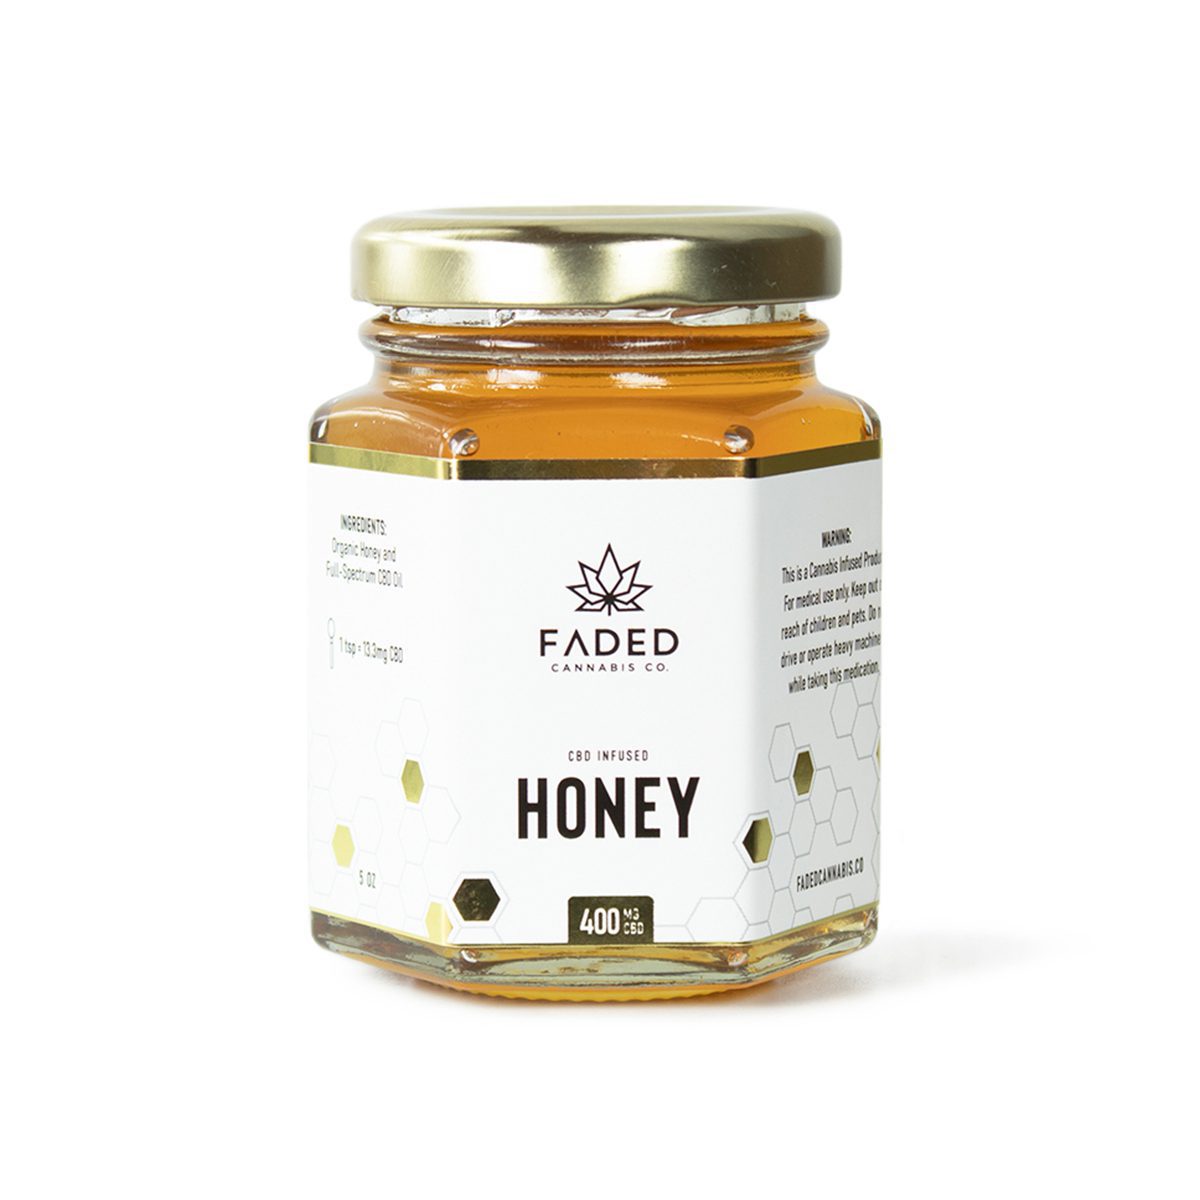 400mg CBD Organic Honey By Faded Canna Co.